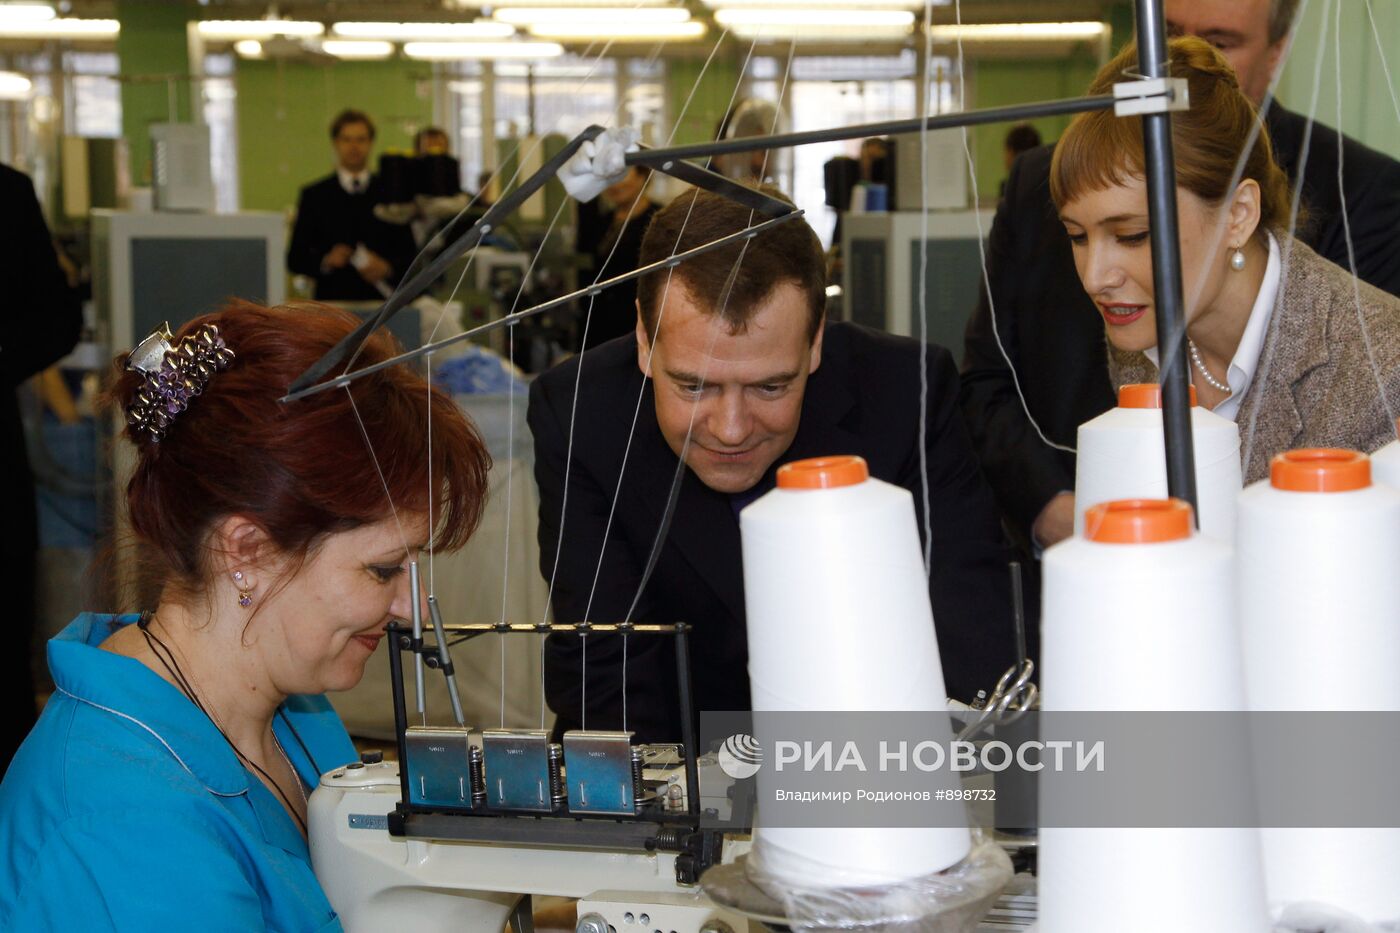 Рабочая поездка Дмитрия Медведева в Смоленск